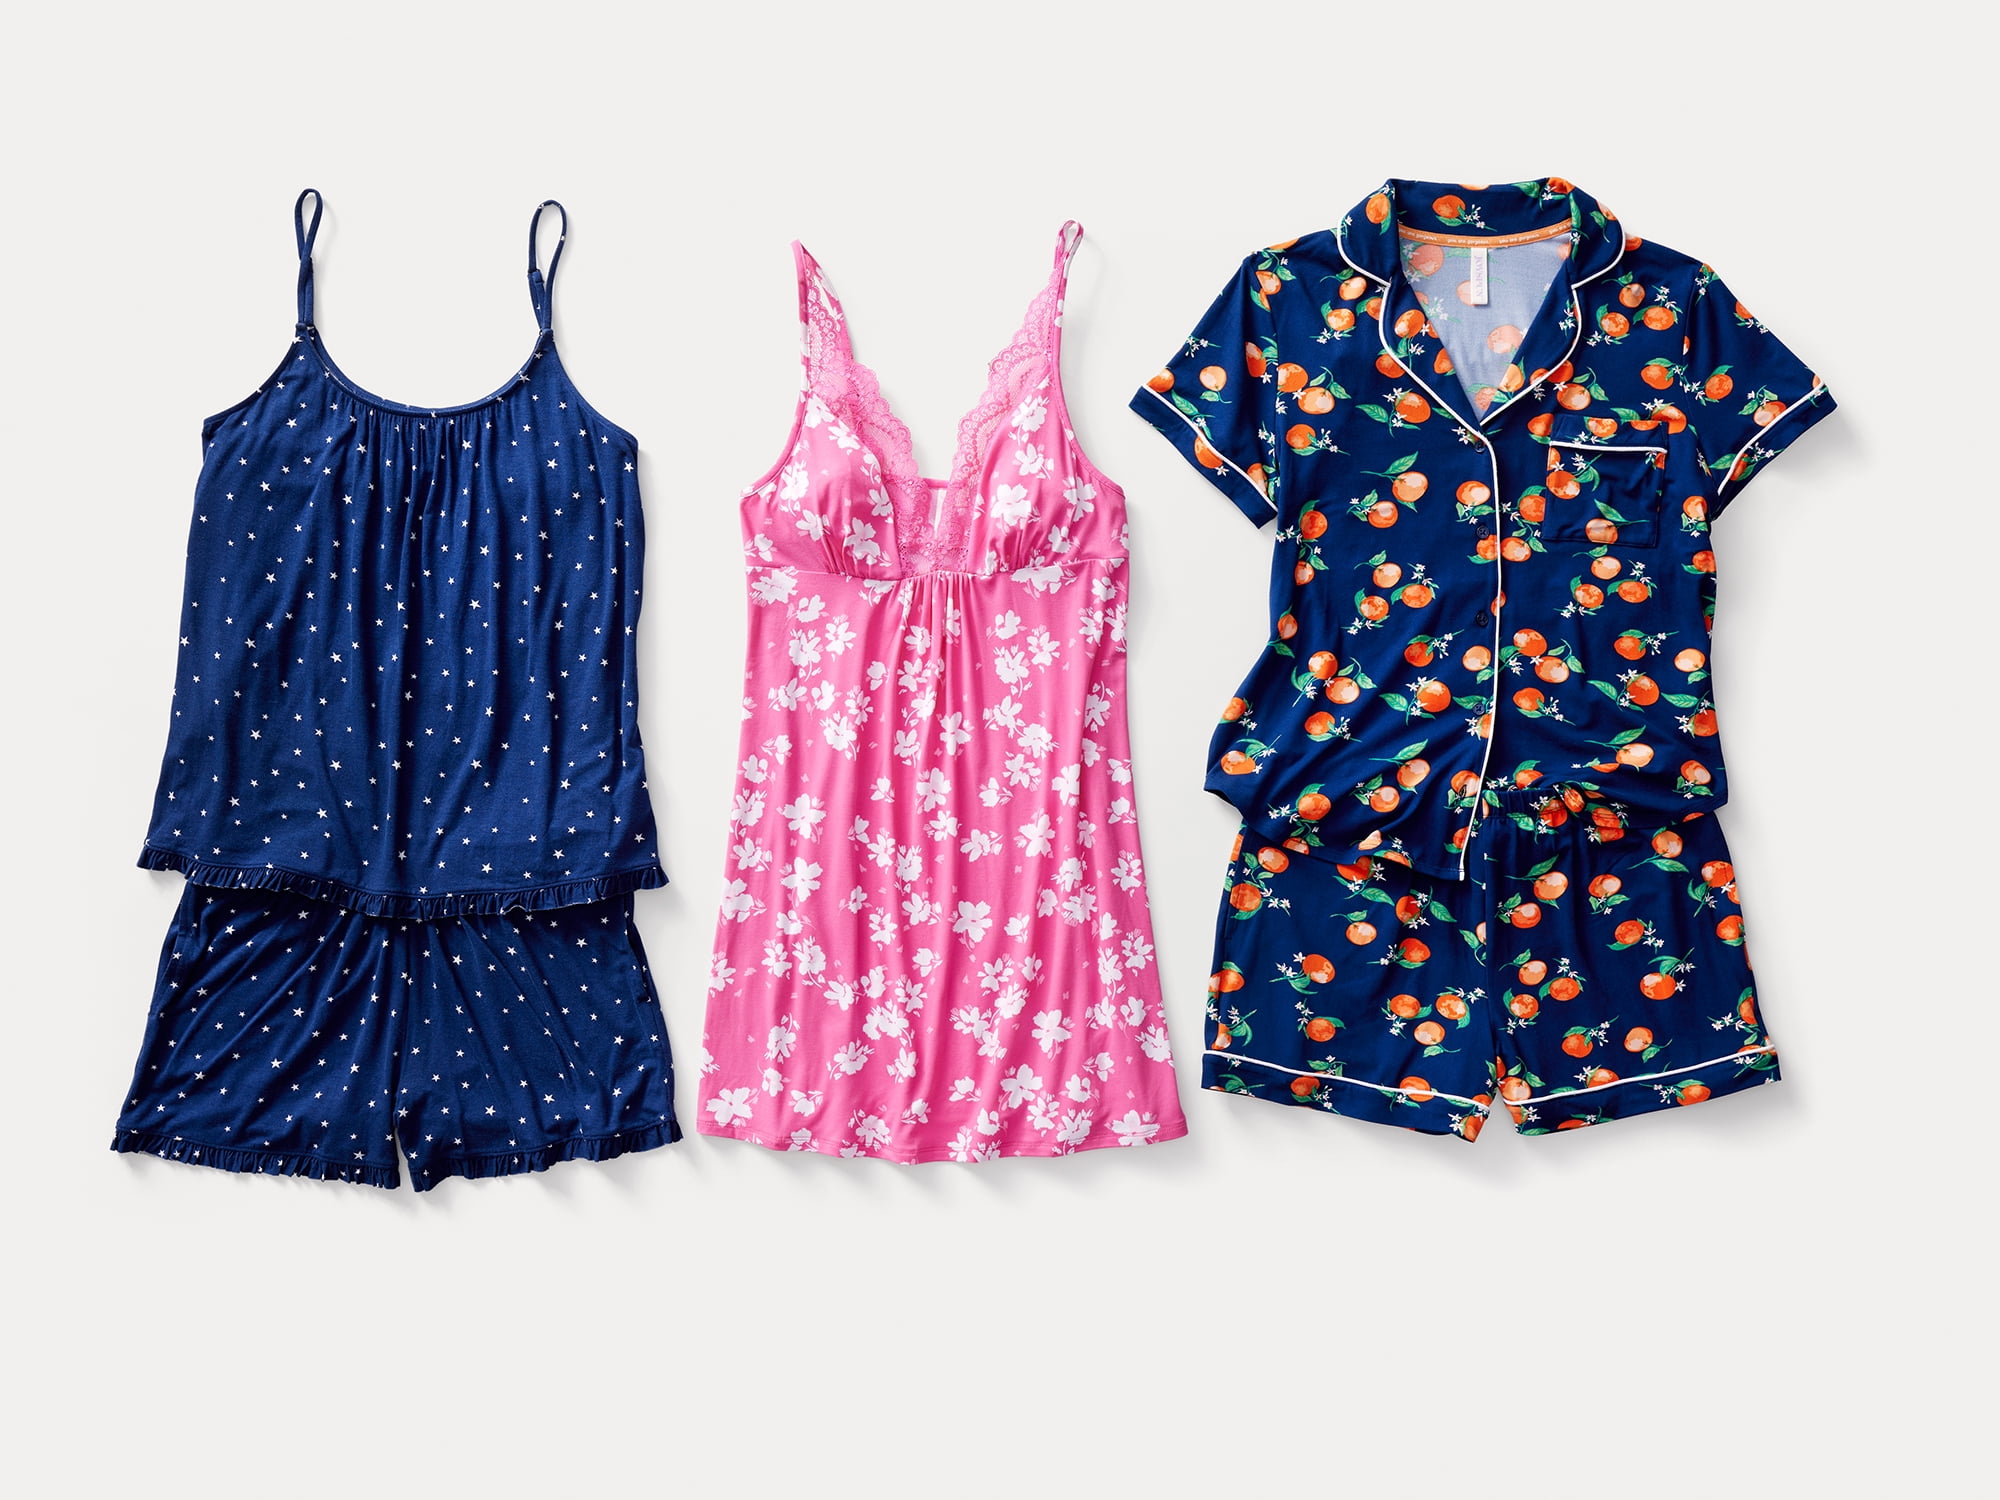 Joyspun Women's Short Sleeve Notch Collar Top and Shorts Knit Pajama Set, 2- Piece, Sizes S to 3X 